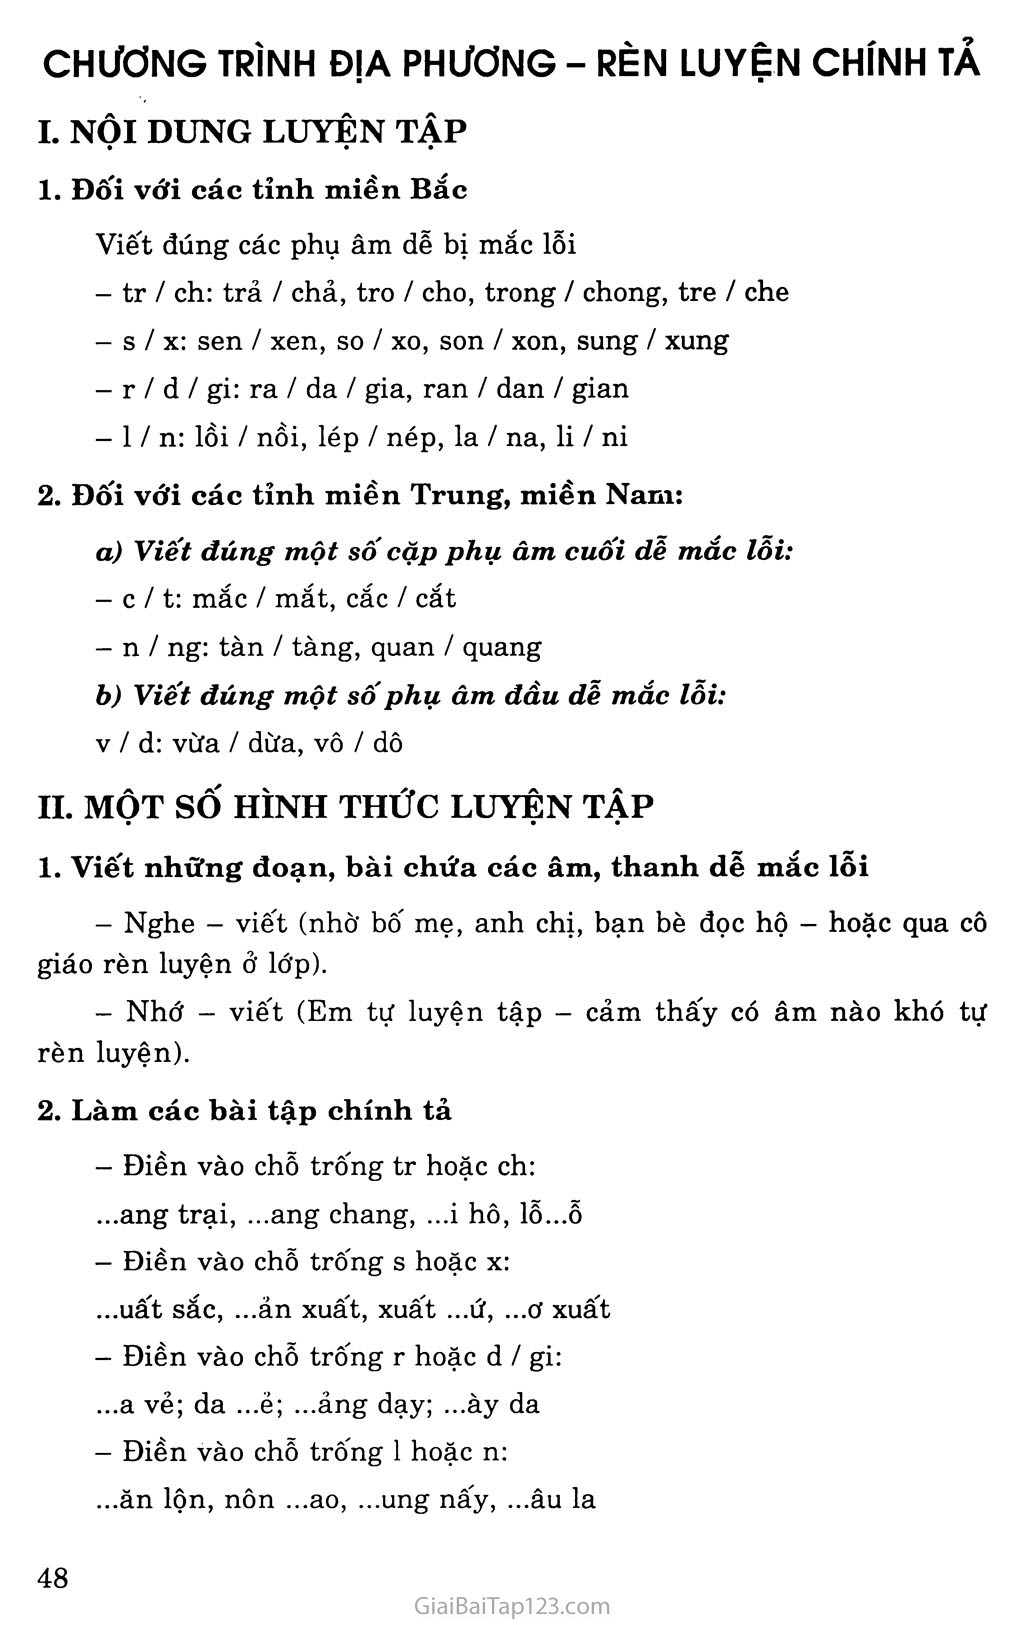 Chương trình địa phương (phần Tiếng Việt) - Rèn luyện chính tả trang 1